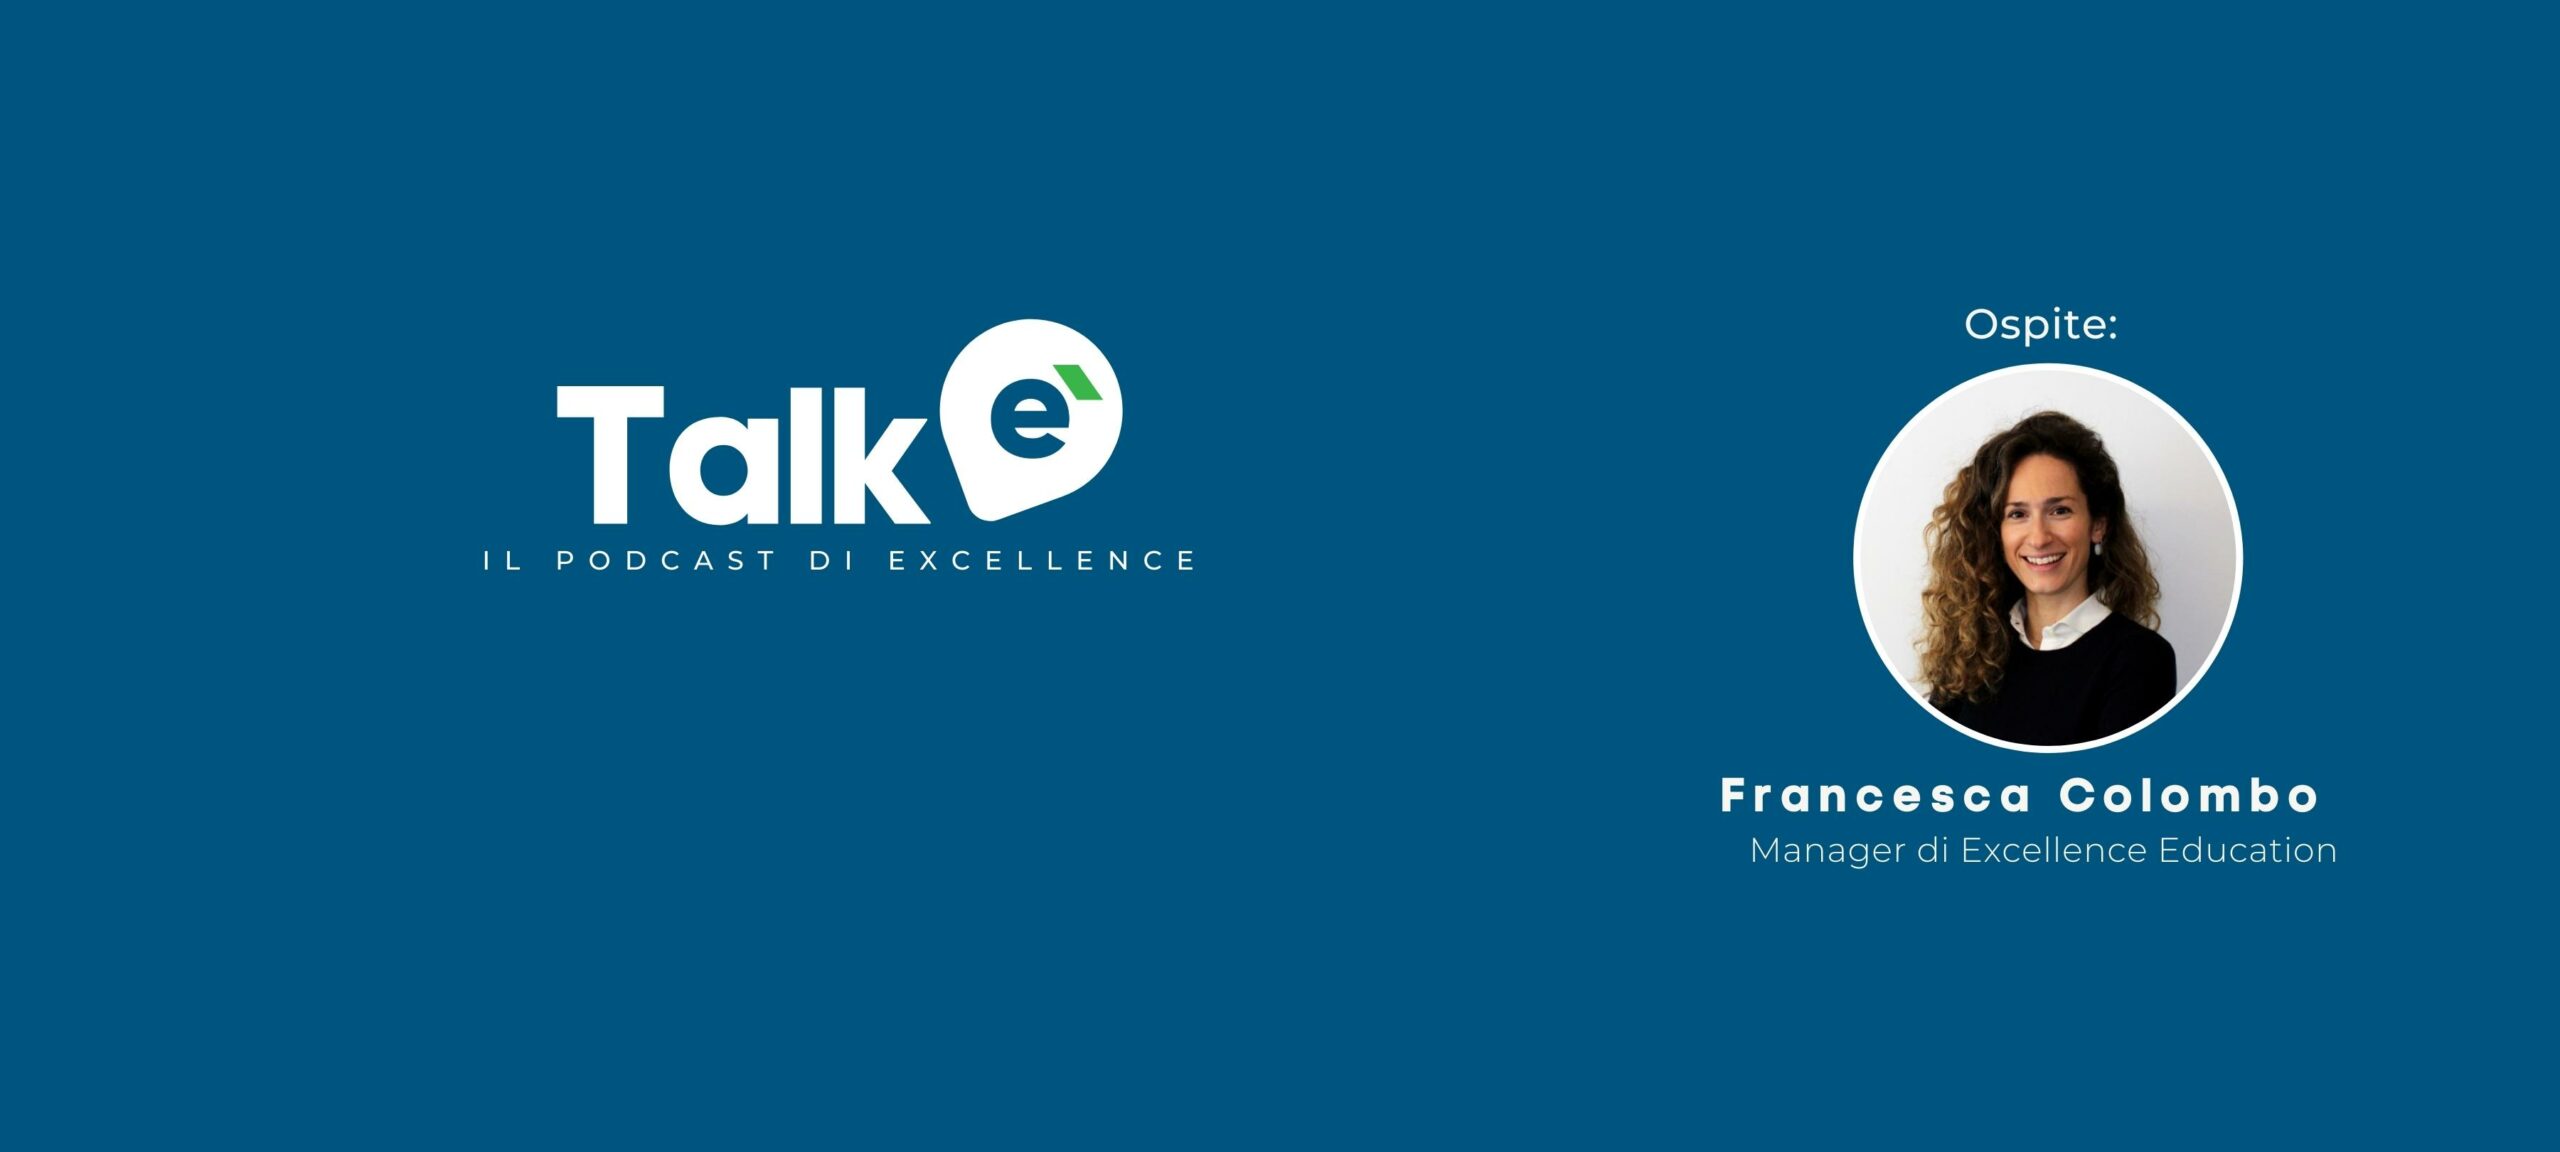 eTalk – il podcast di Excellence: puntata #3, “Educazione finanziaria: perché è importante parlarne”